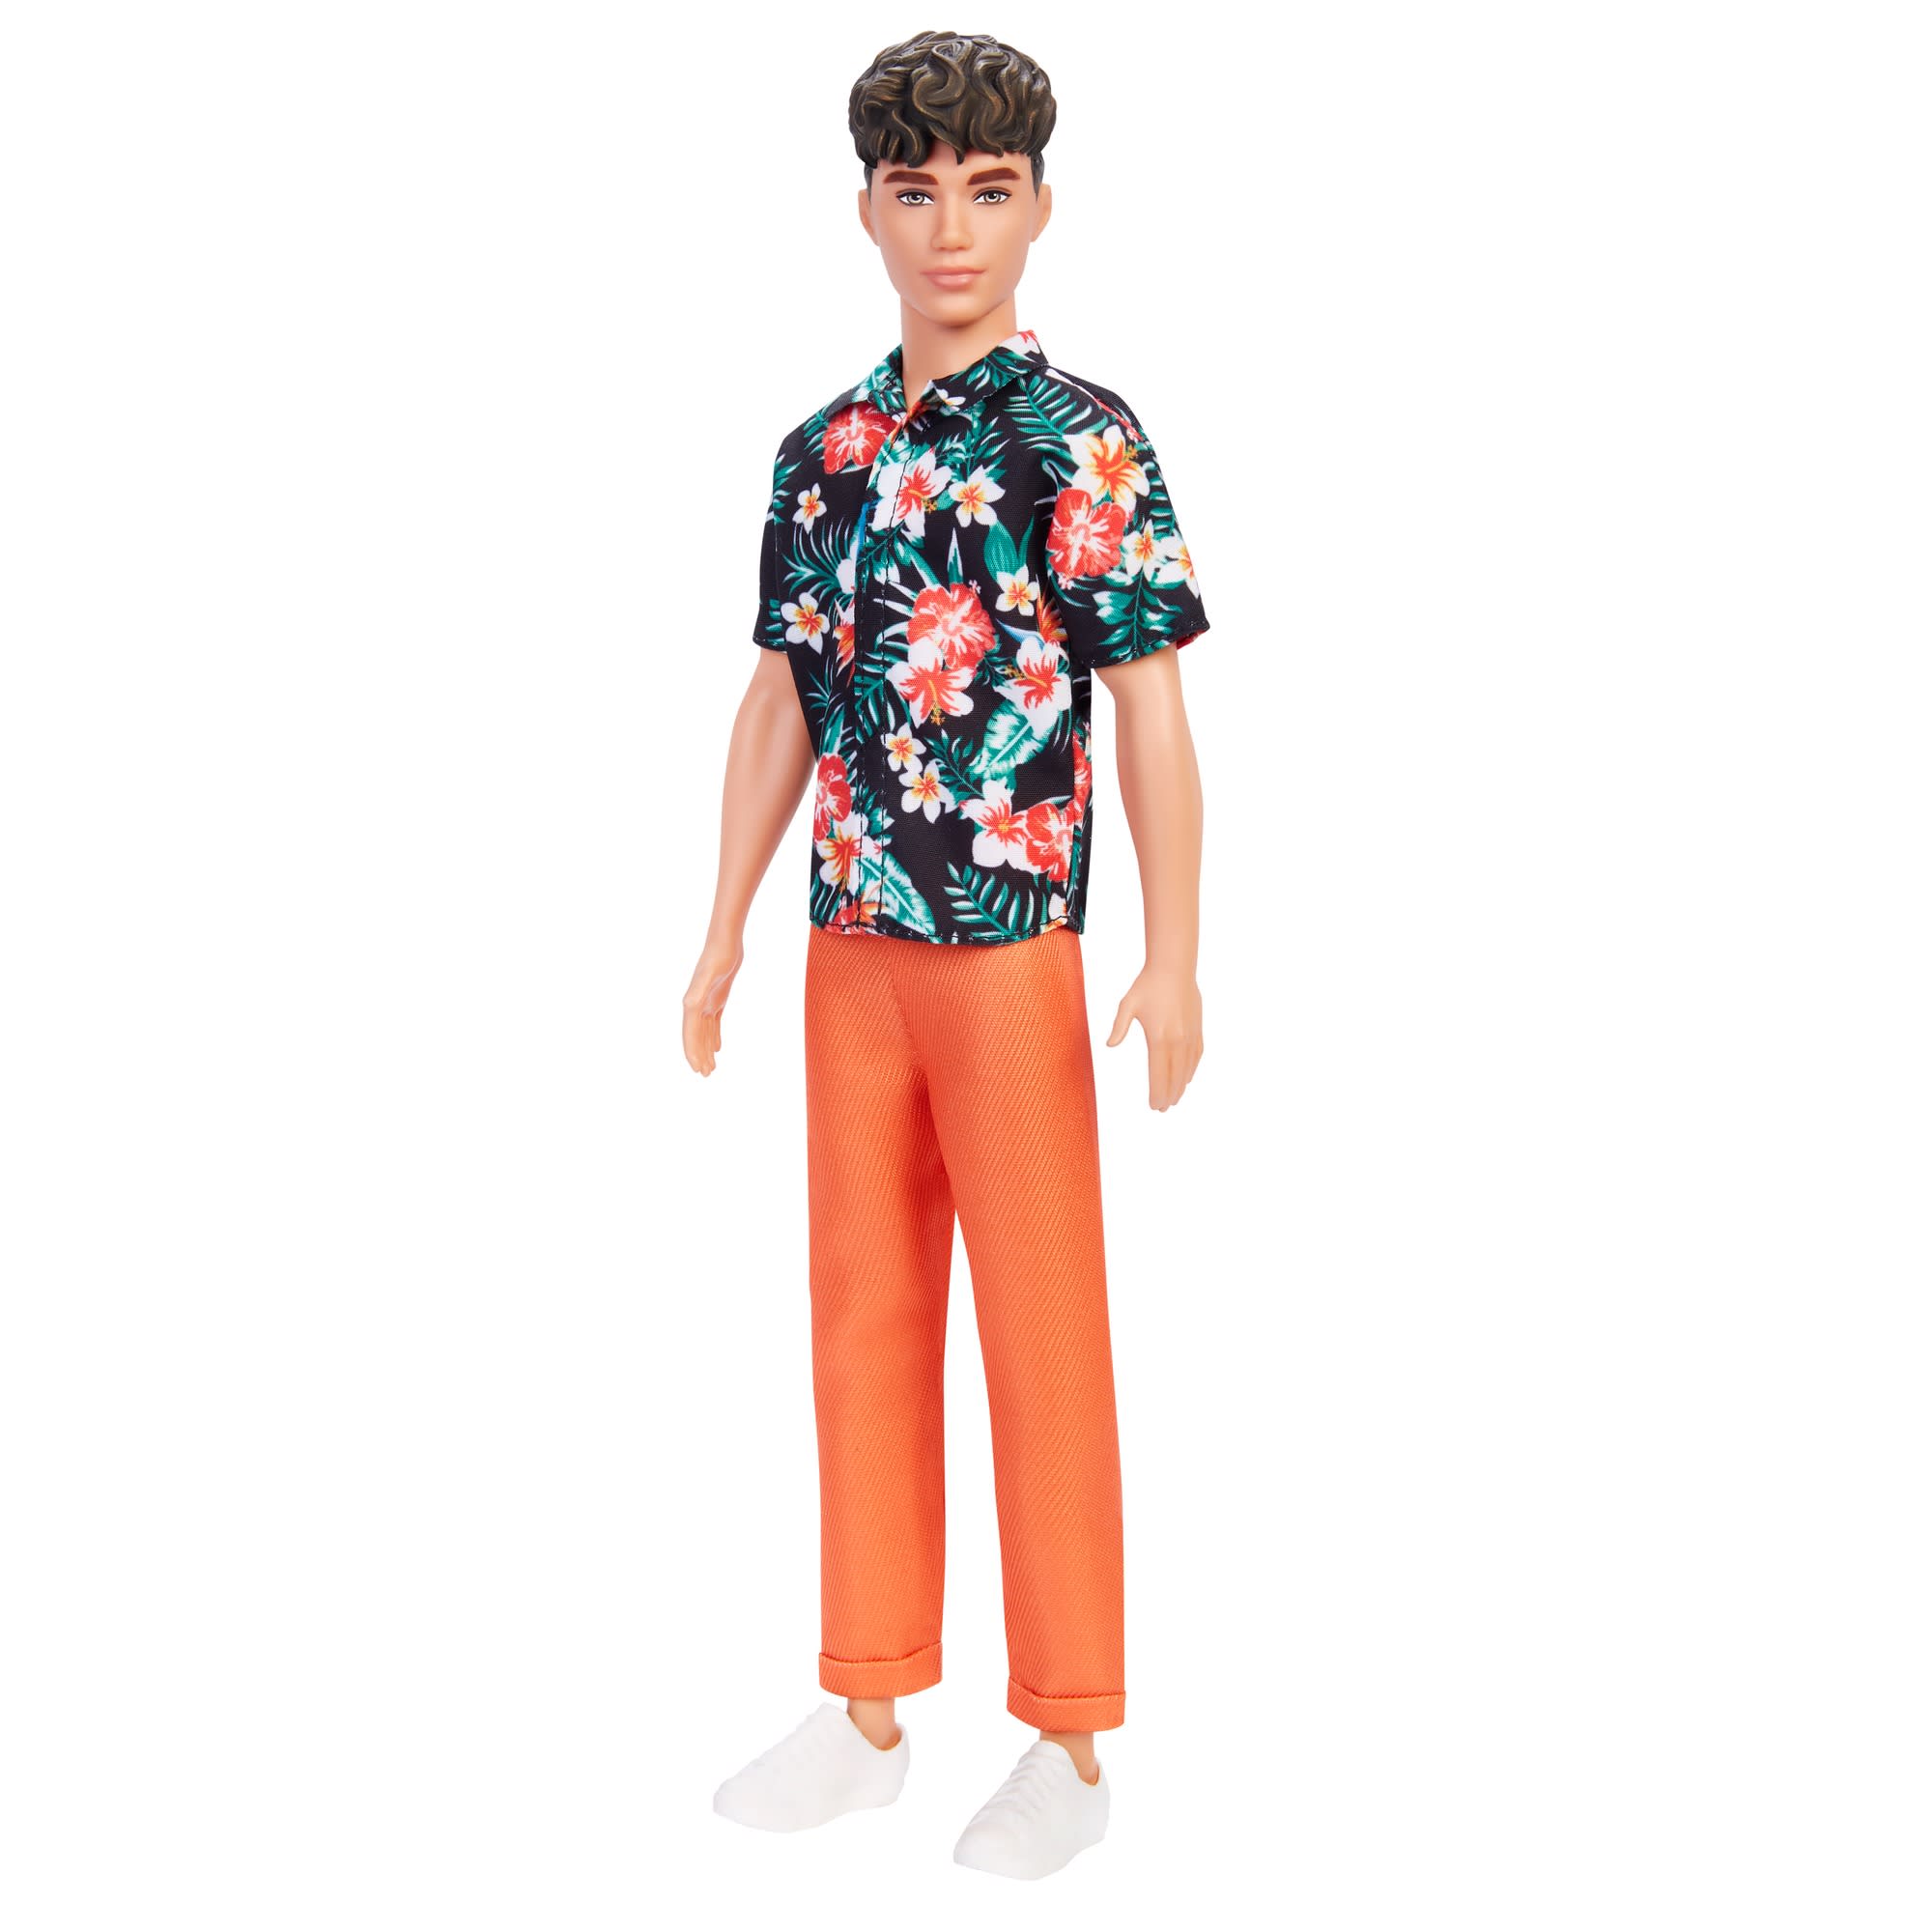 Ken Fashionistas Doll #184 | Mattel